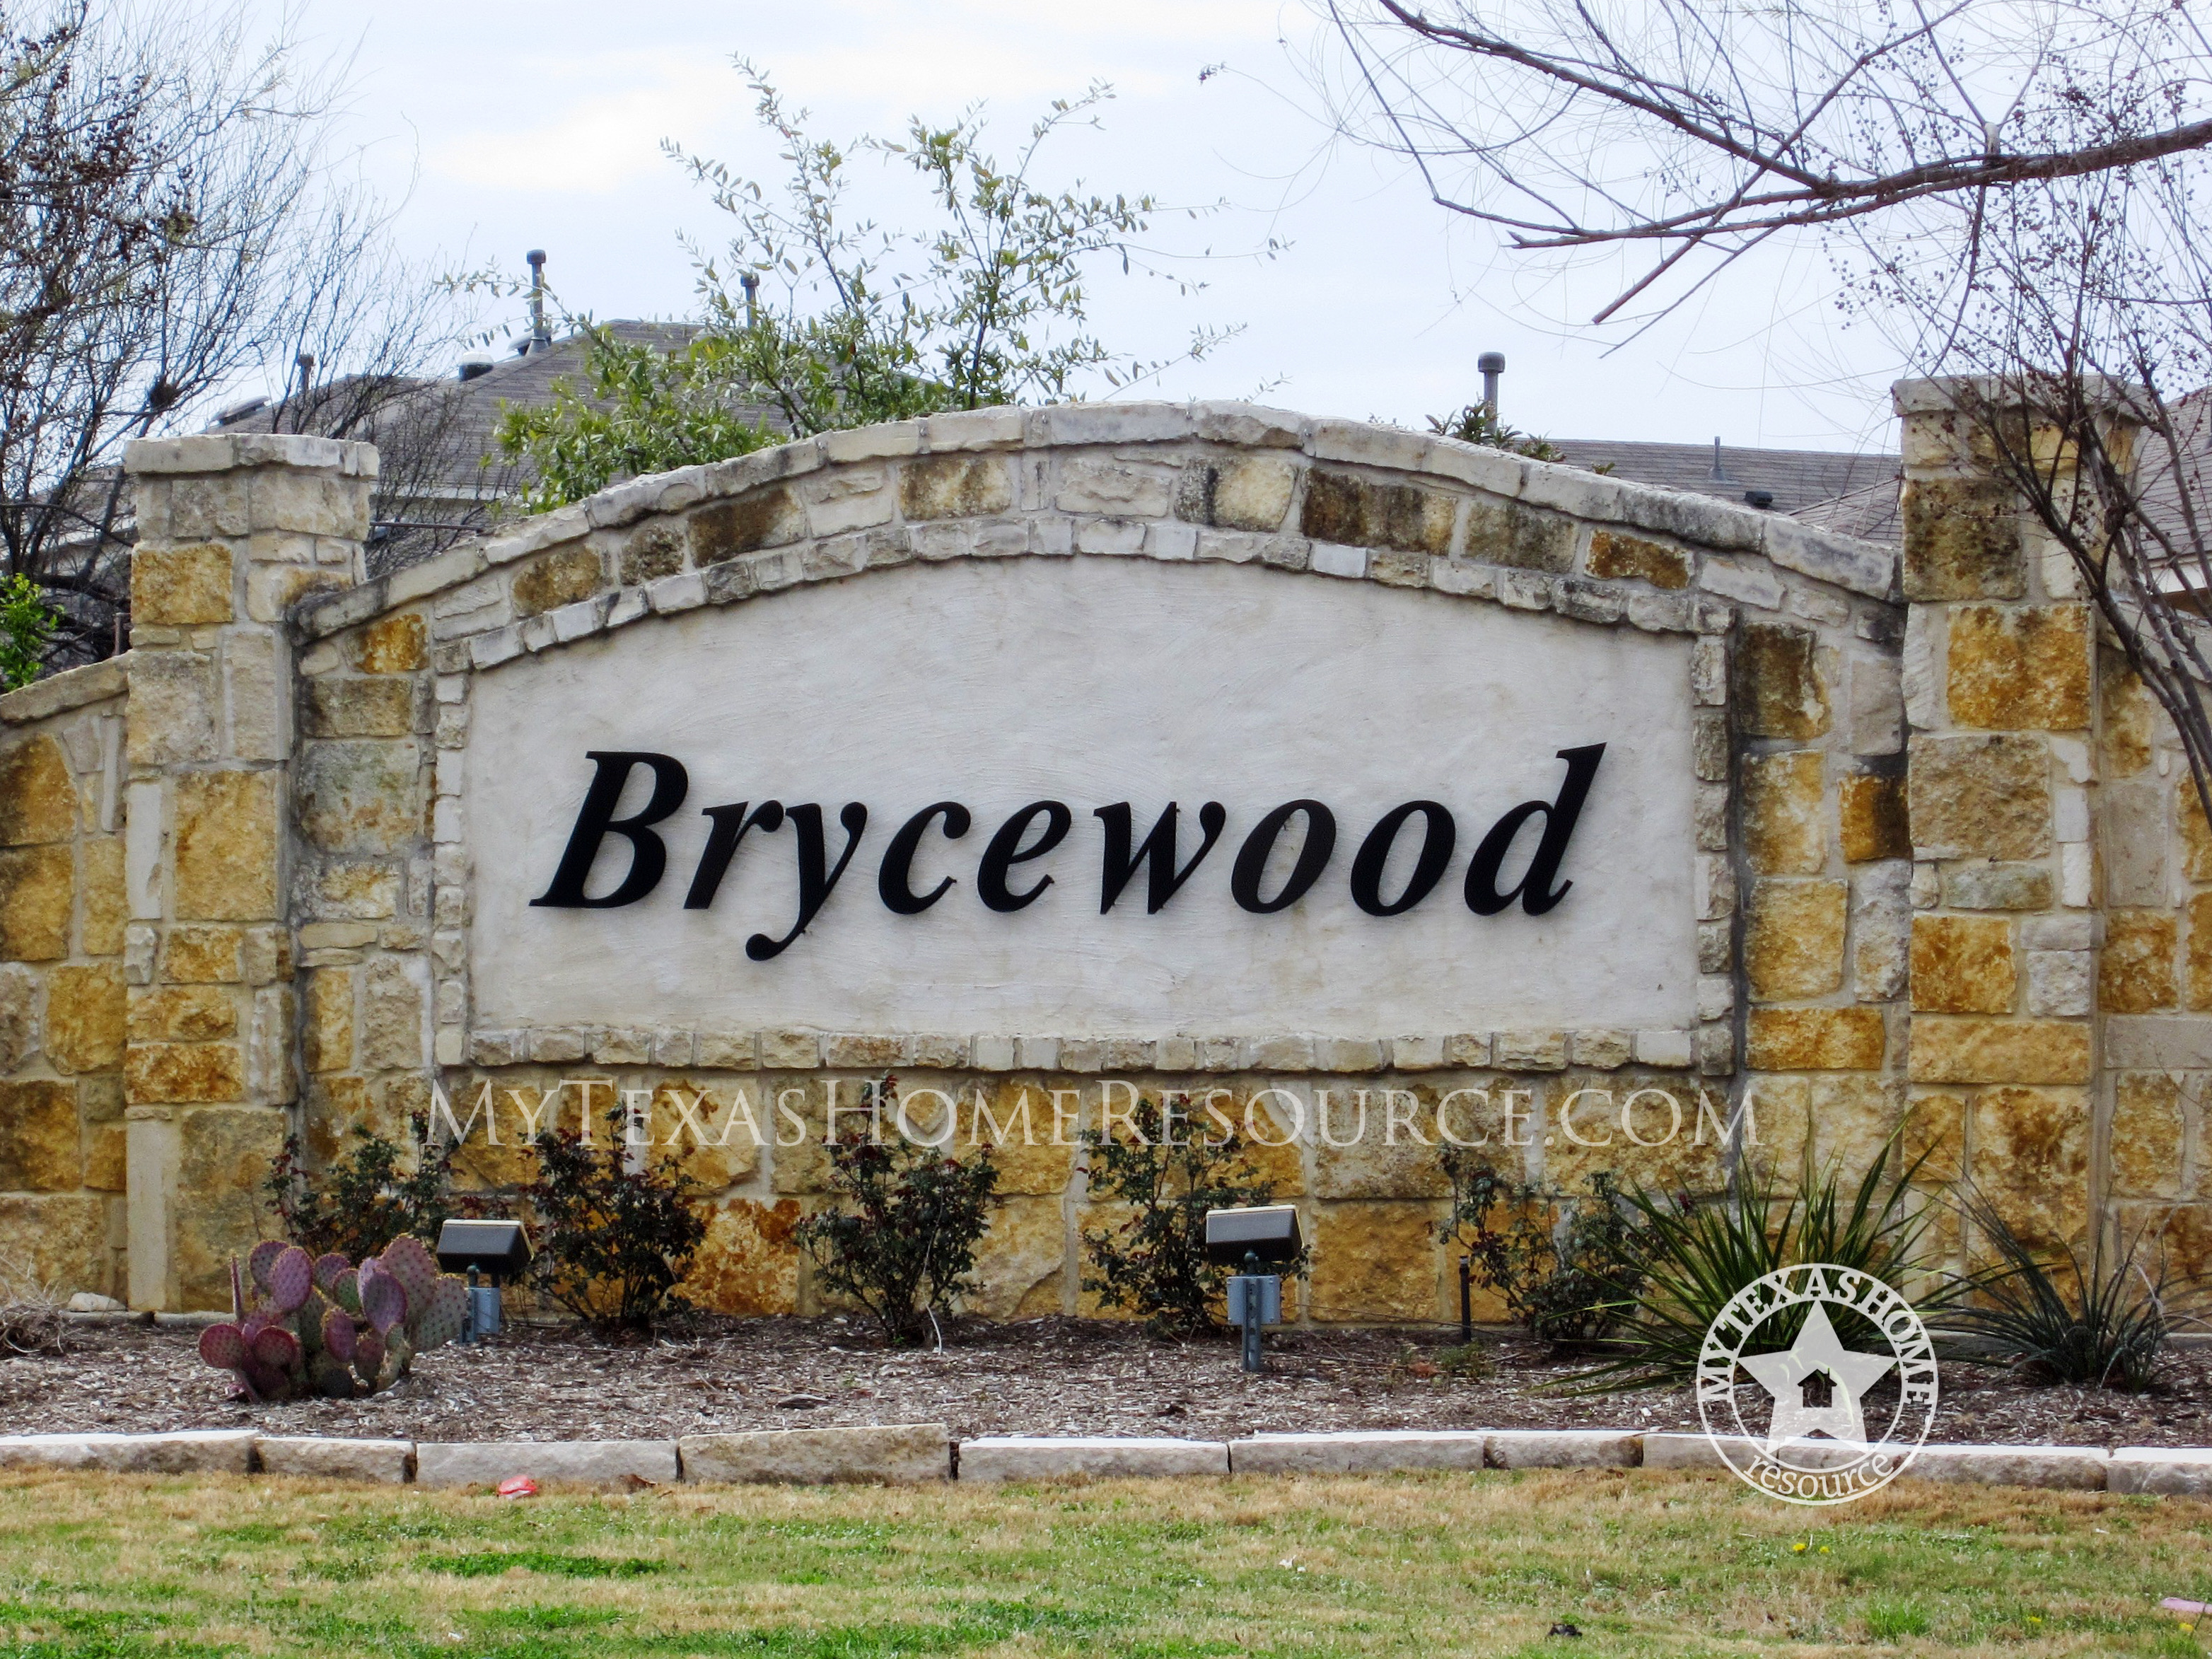 Brycewood Community